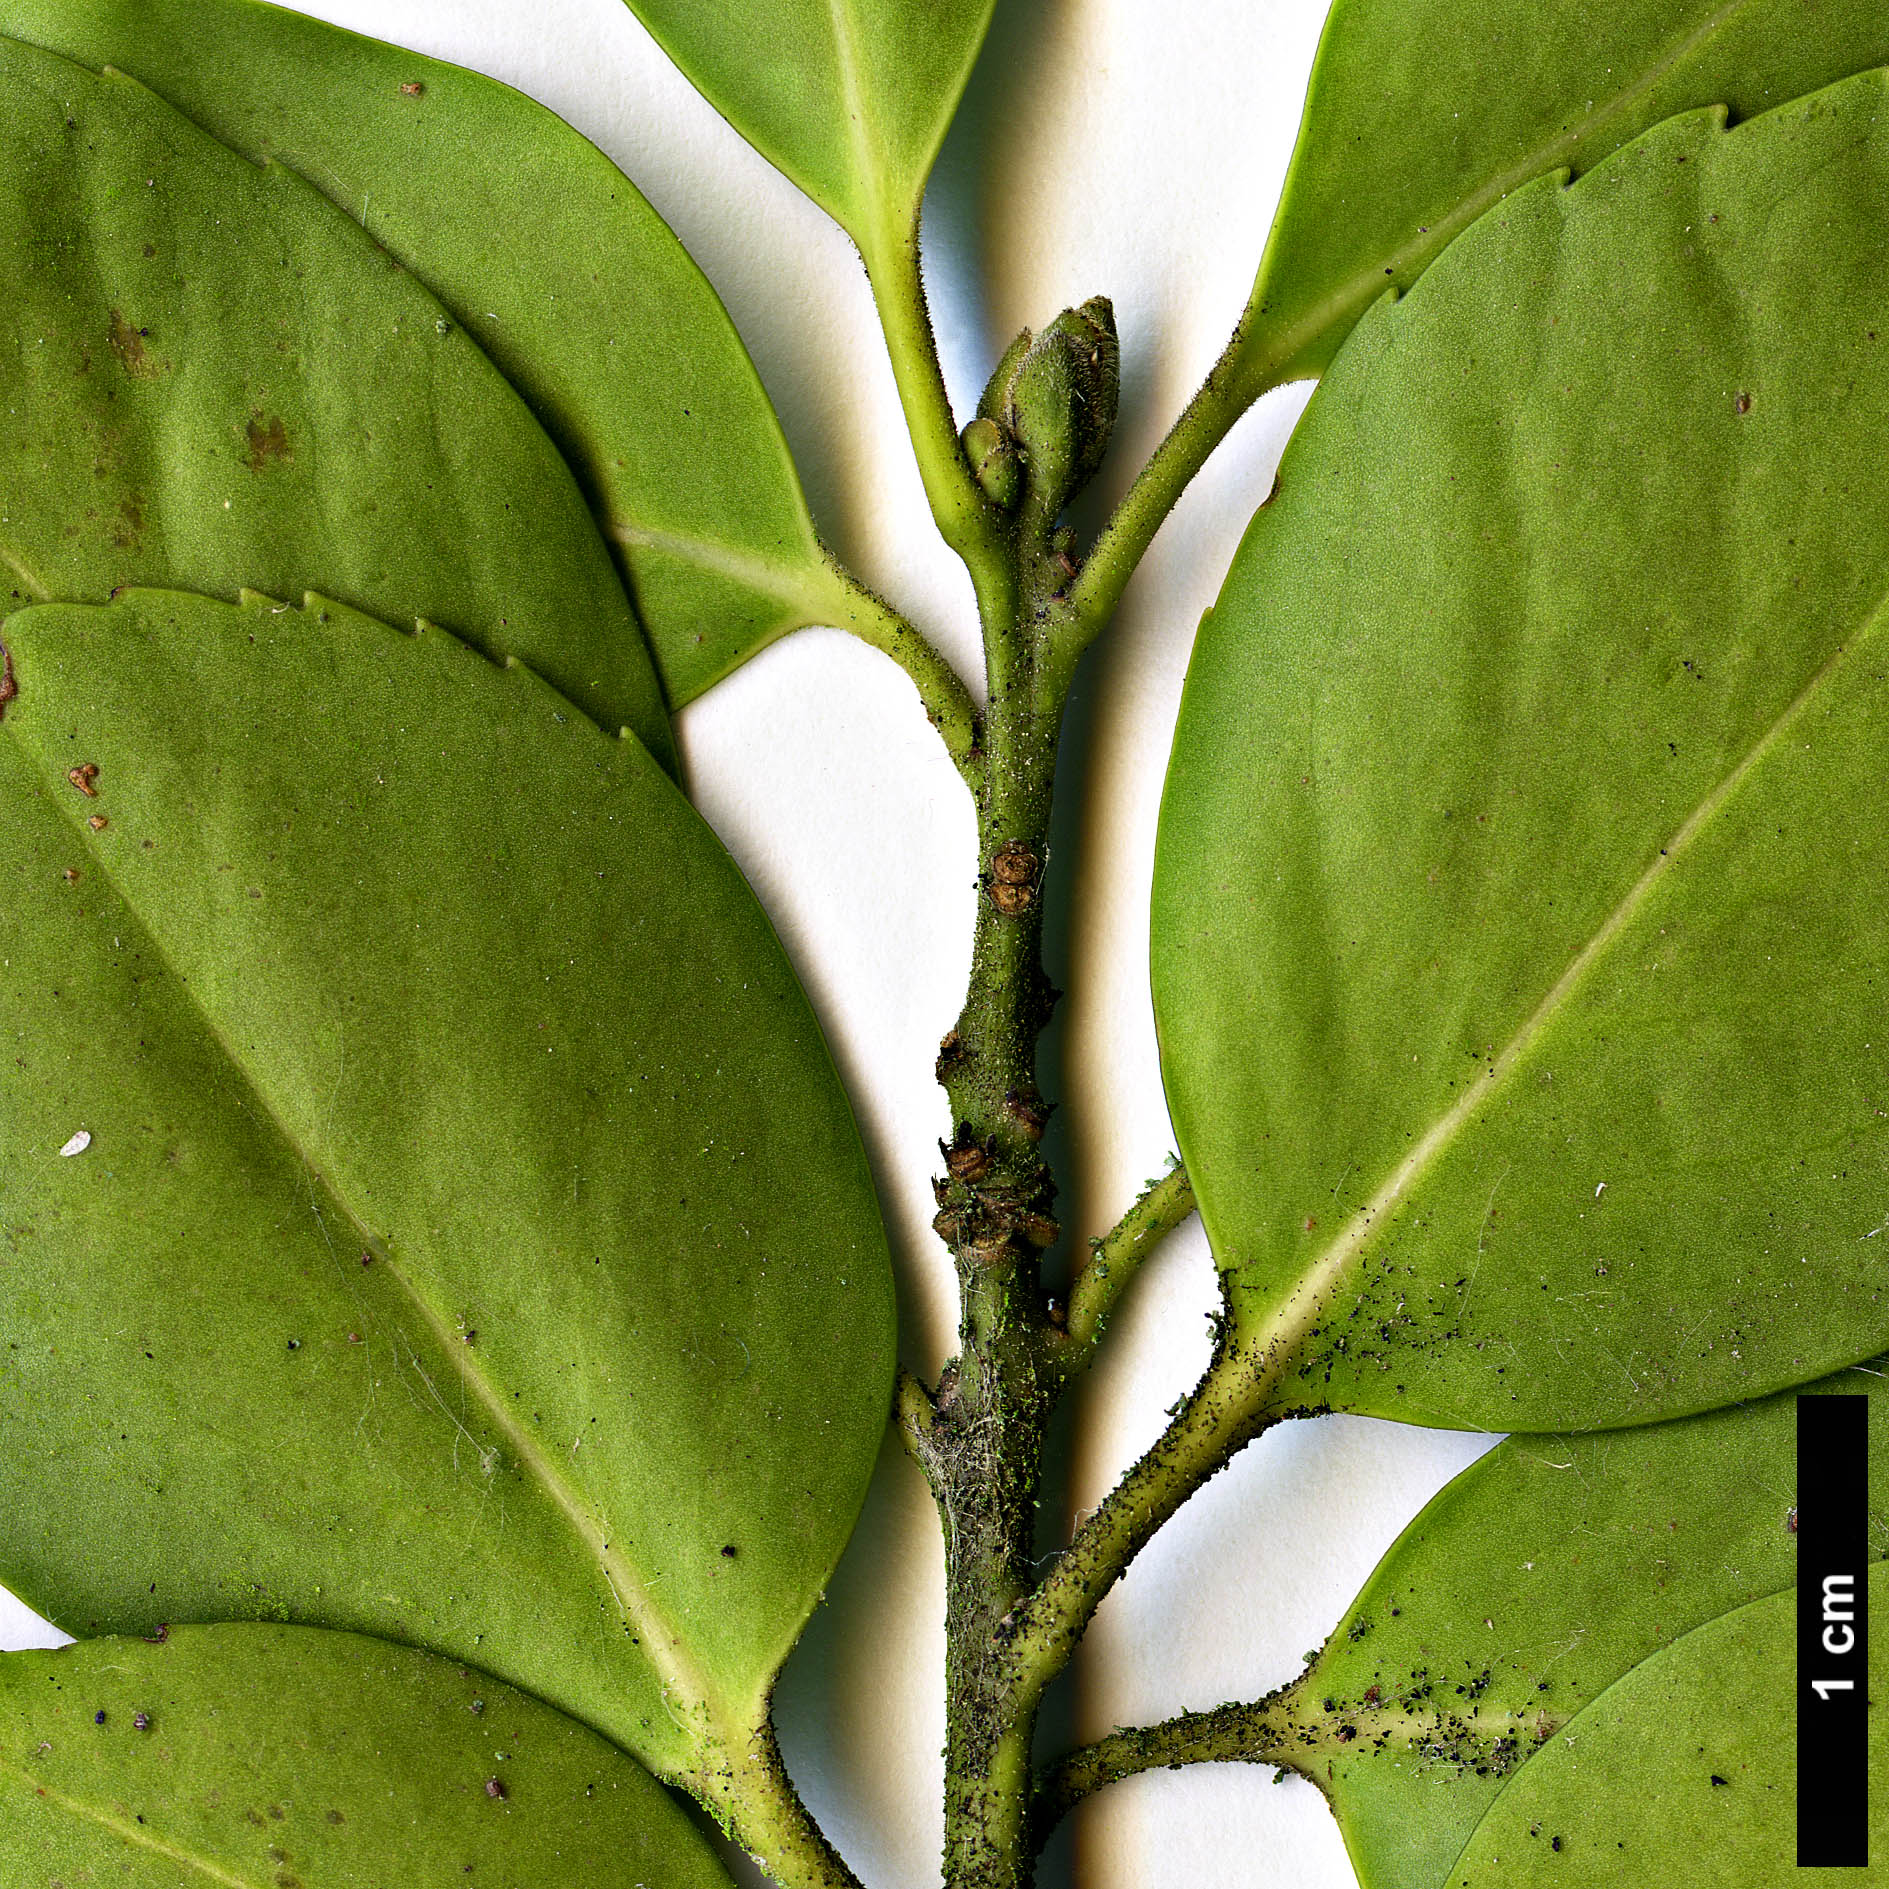 High resolution image: Family: Aquifoliaceae - Genus: Ilex - Taxon: sugerokii - SpeciesSub: subsp. longipedunculata